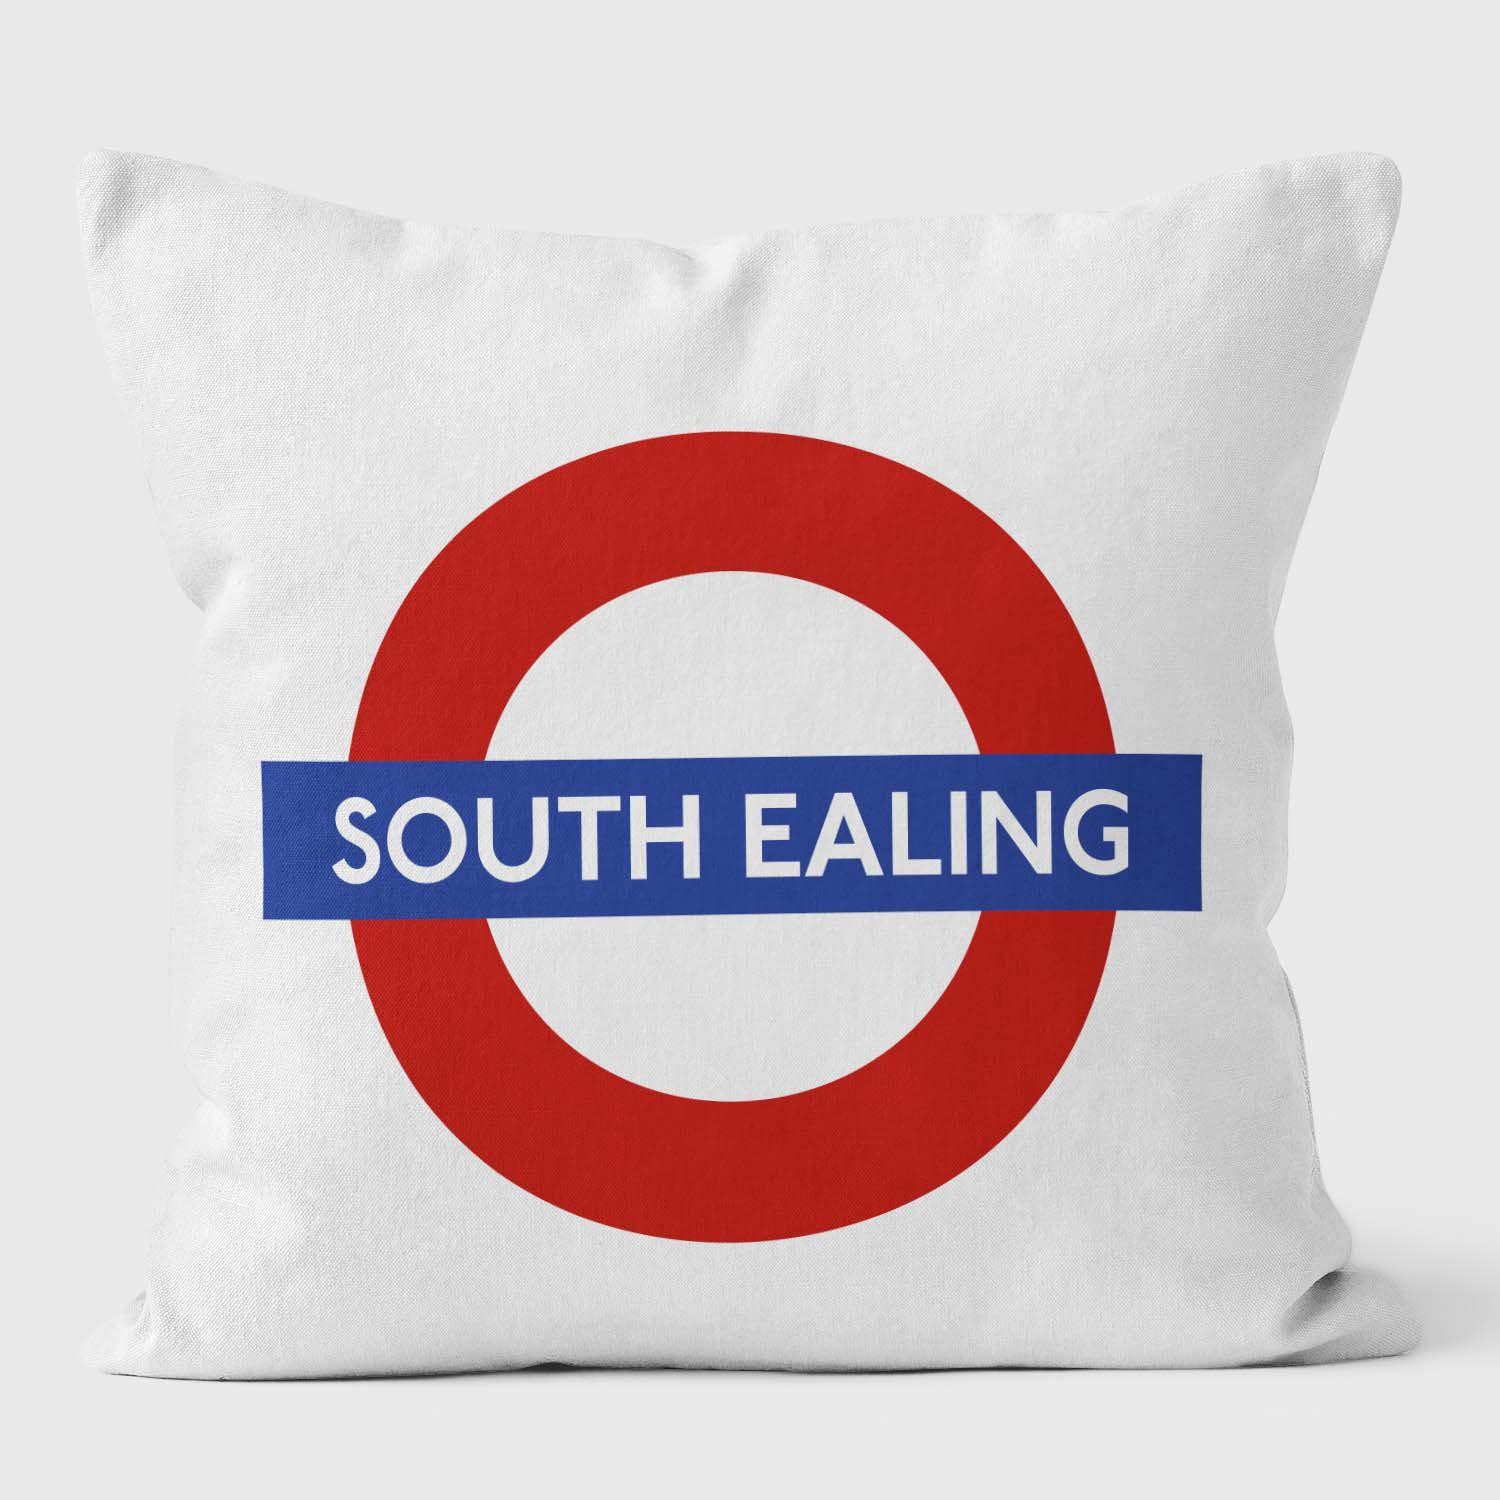 South Ealing London Underground Tube Station Roundel Cushion - Handmade Cushions UK - WeLoveCushions